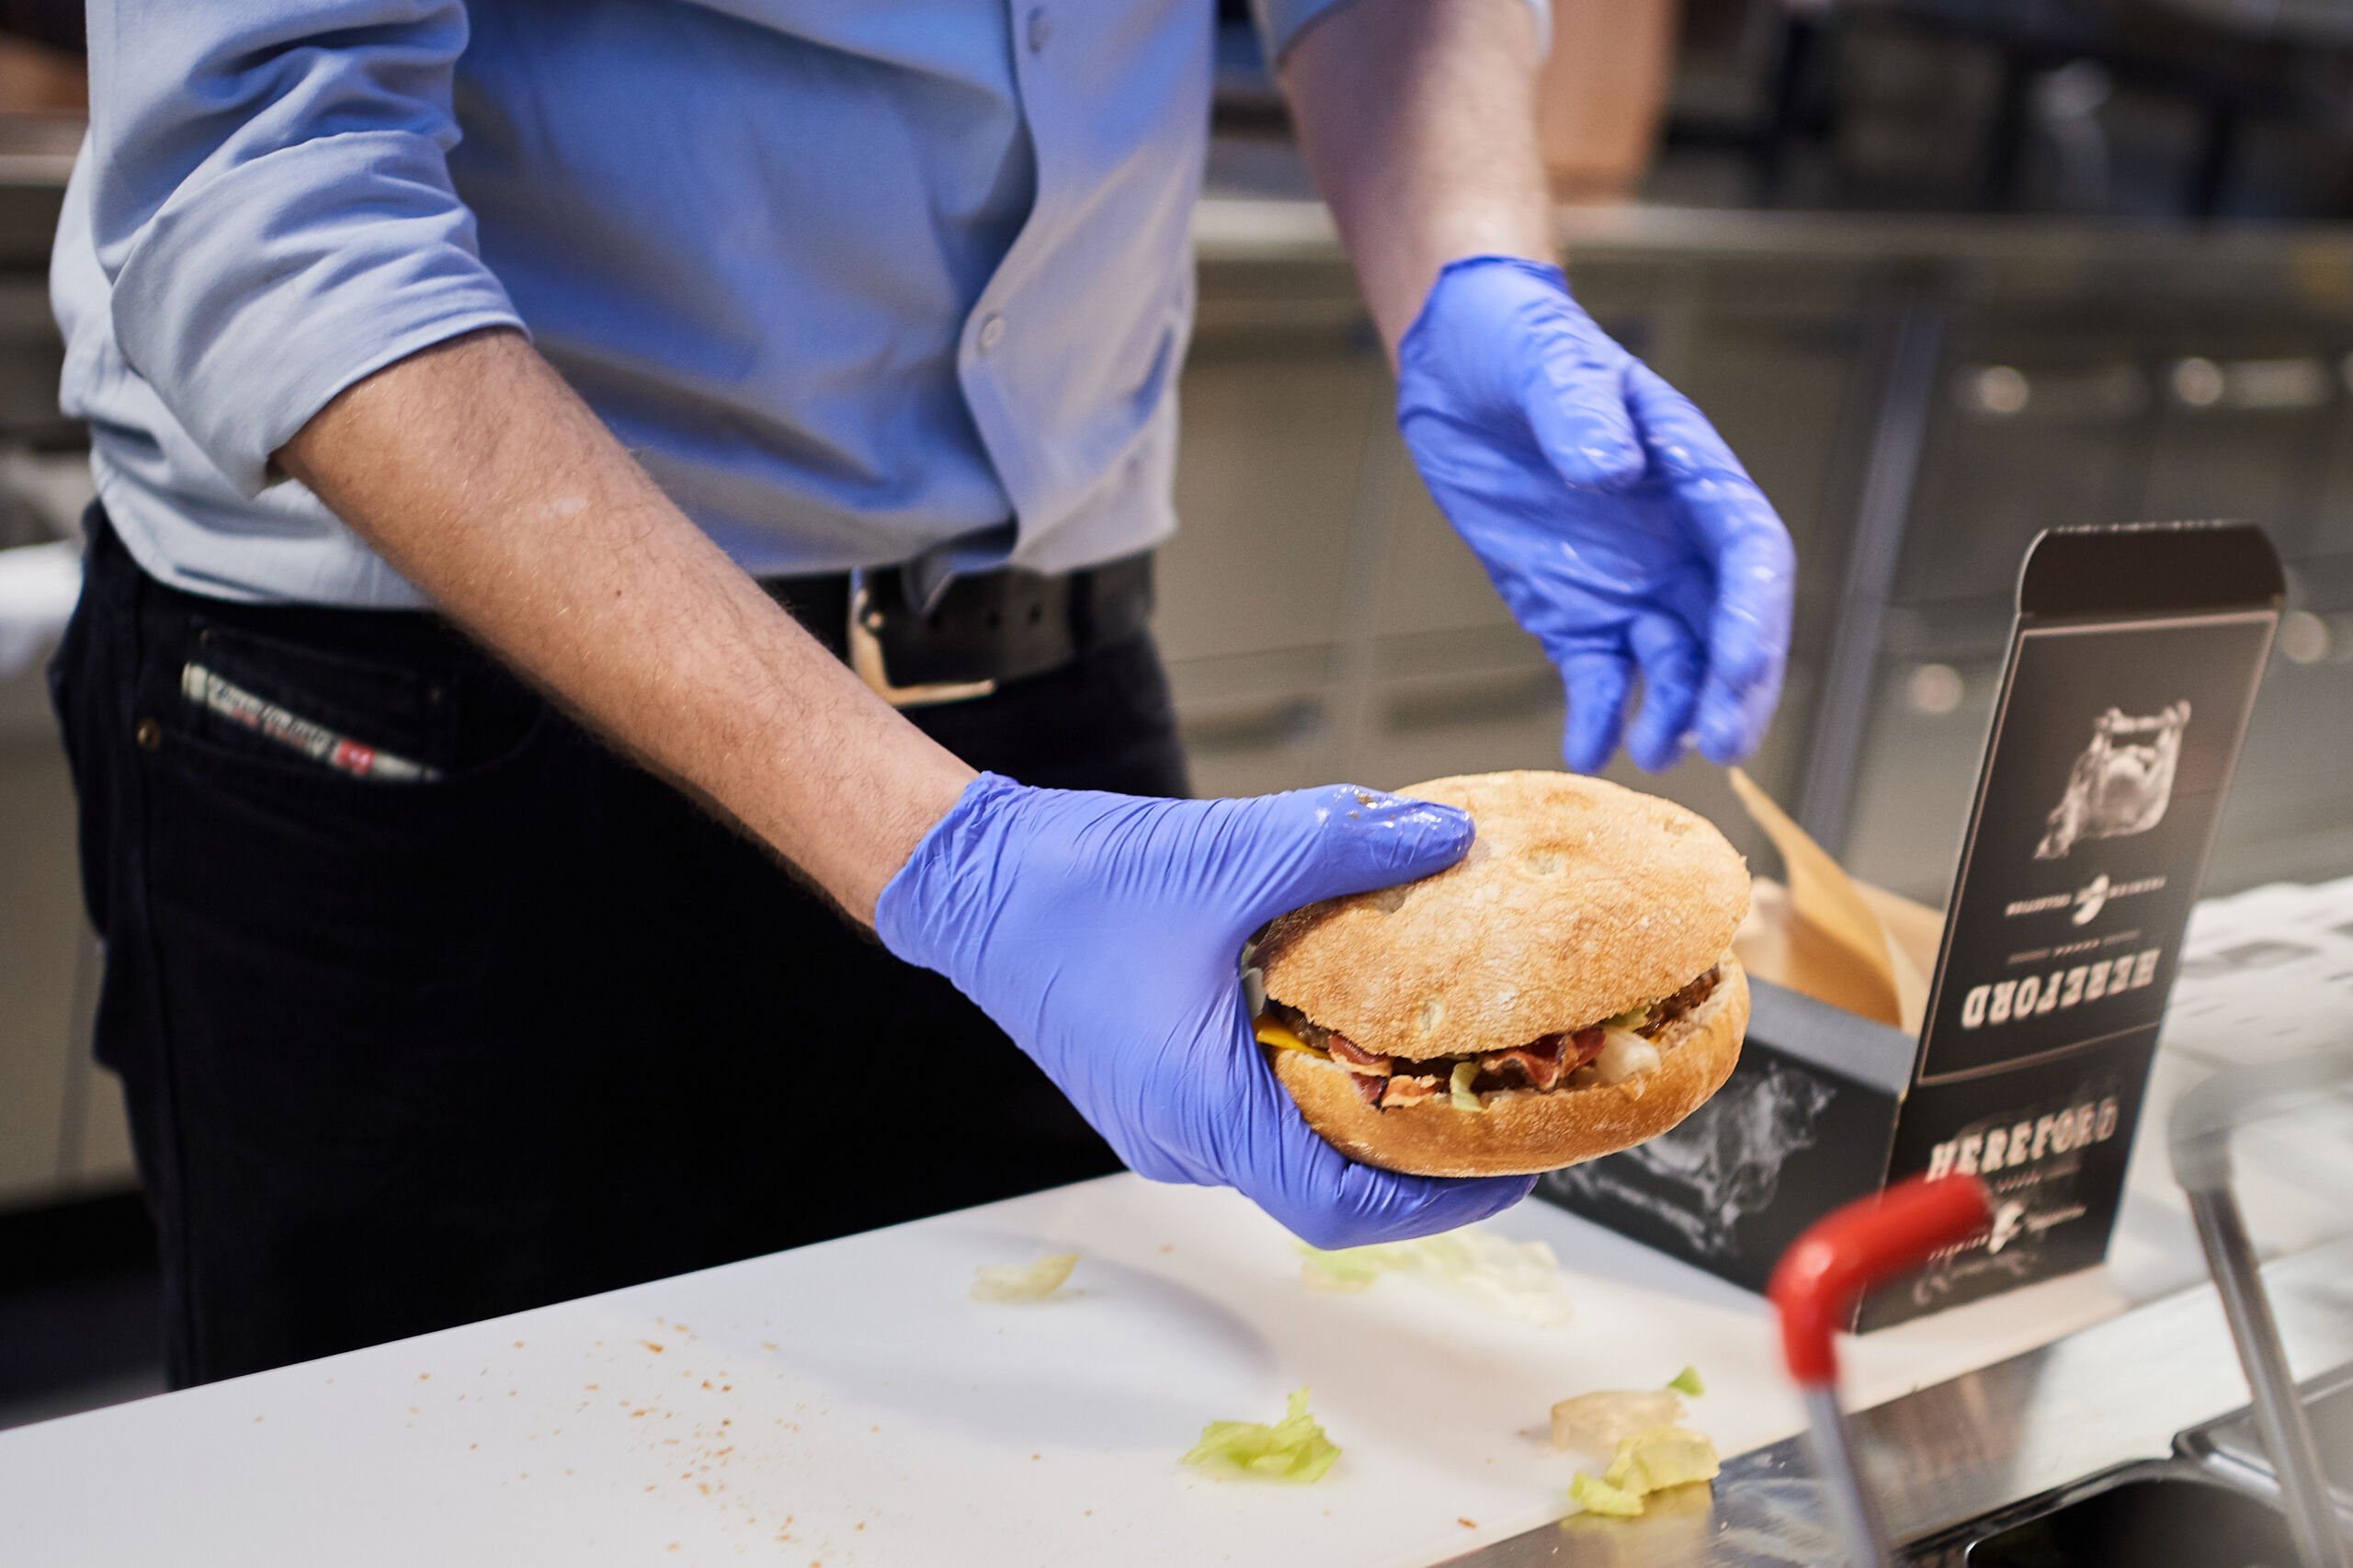 Elever på efterskole har forbud mod burgermad: Lever i lukket boble af frygt for coronasmitte